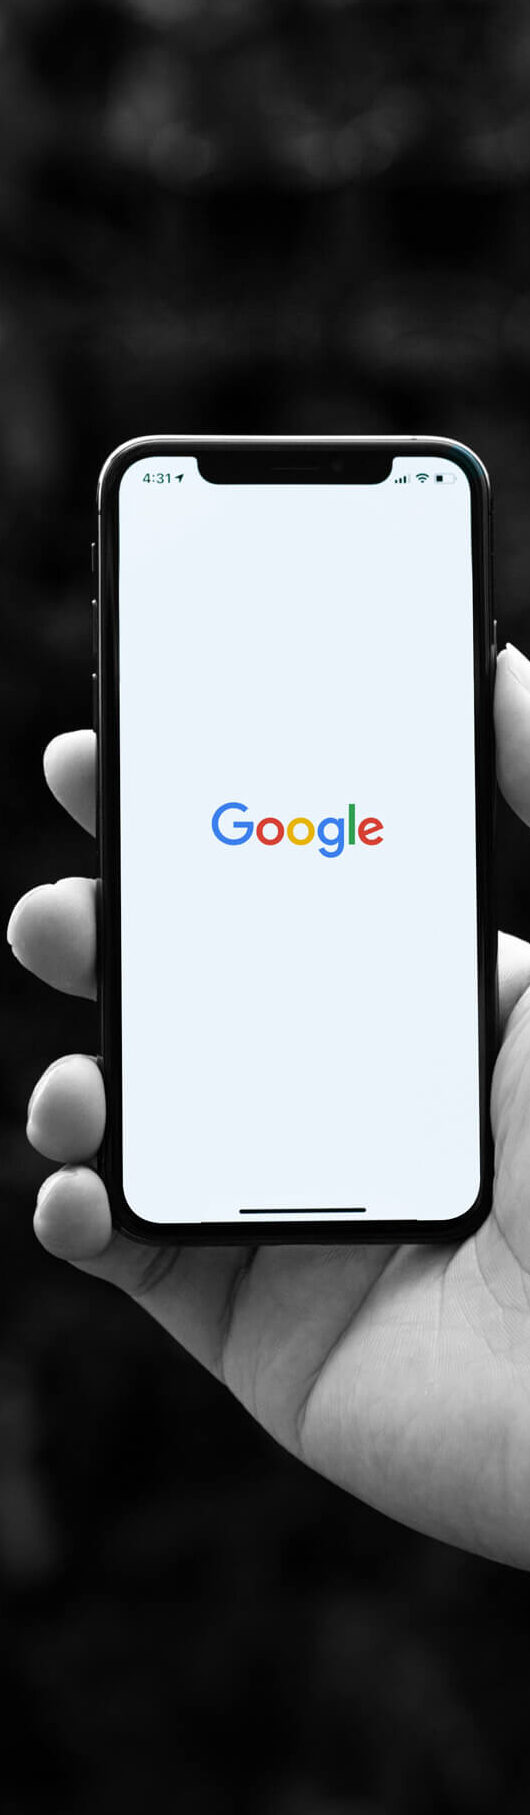 Mobil i hånd viser hjemmesiden til Google.